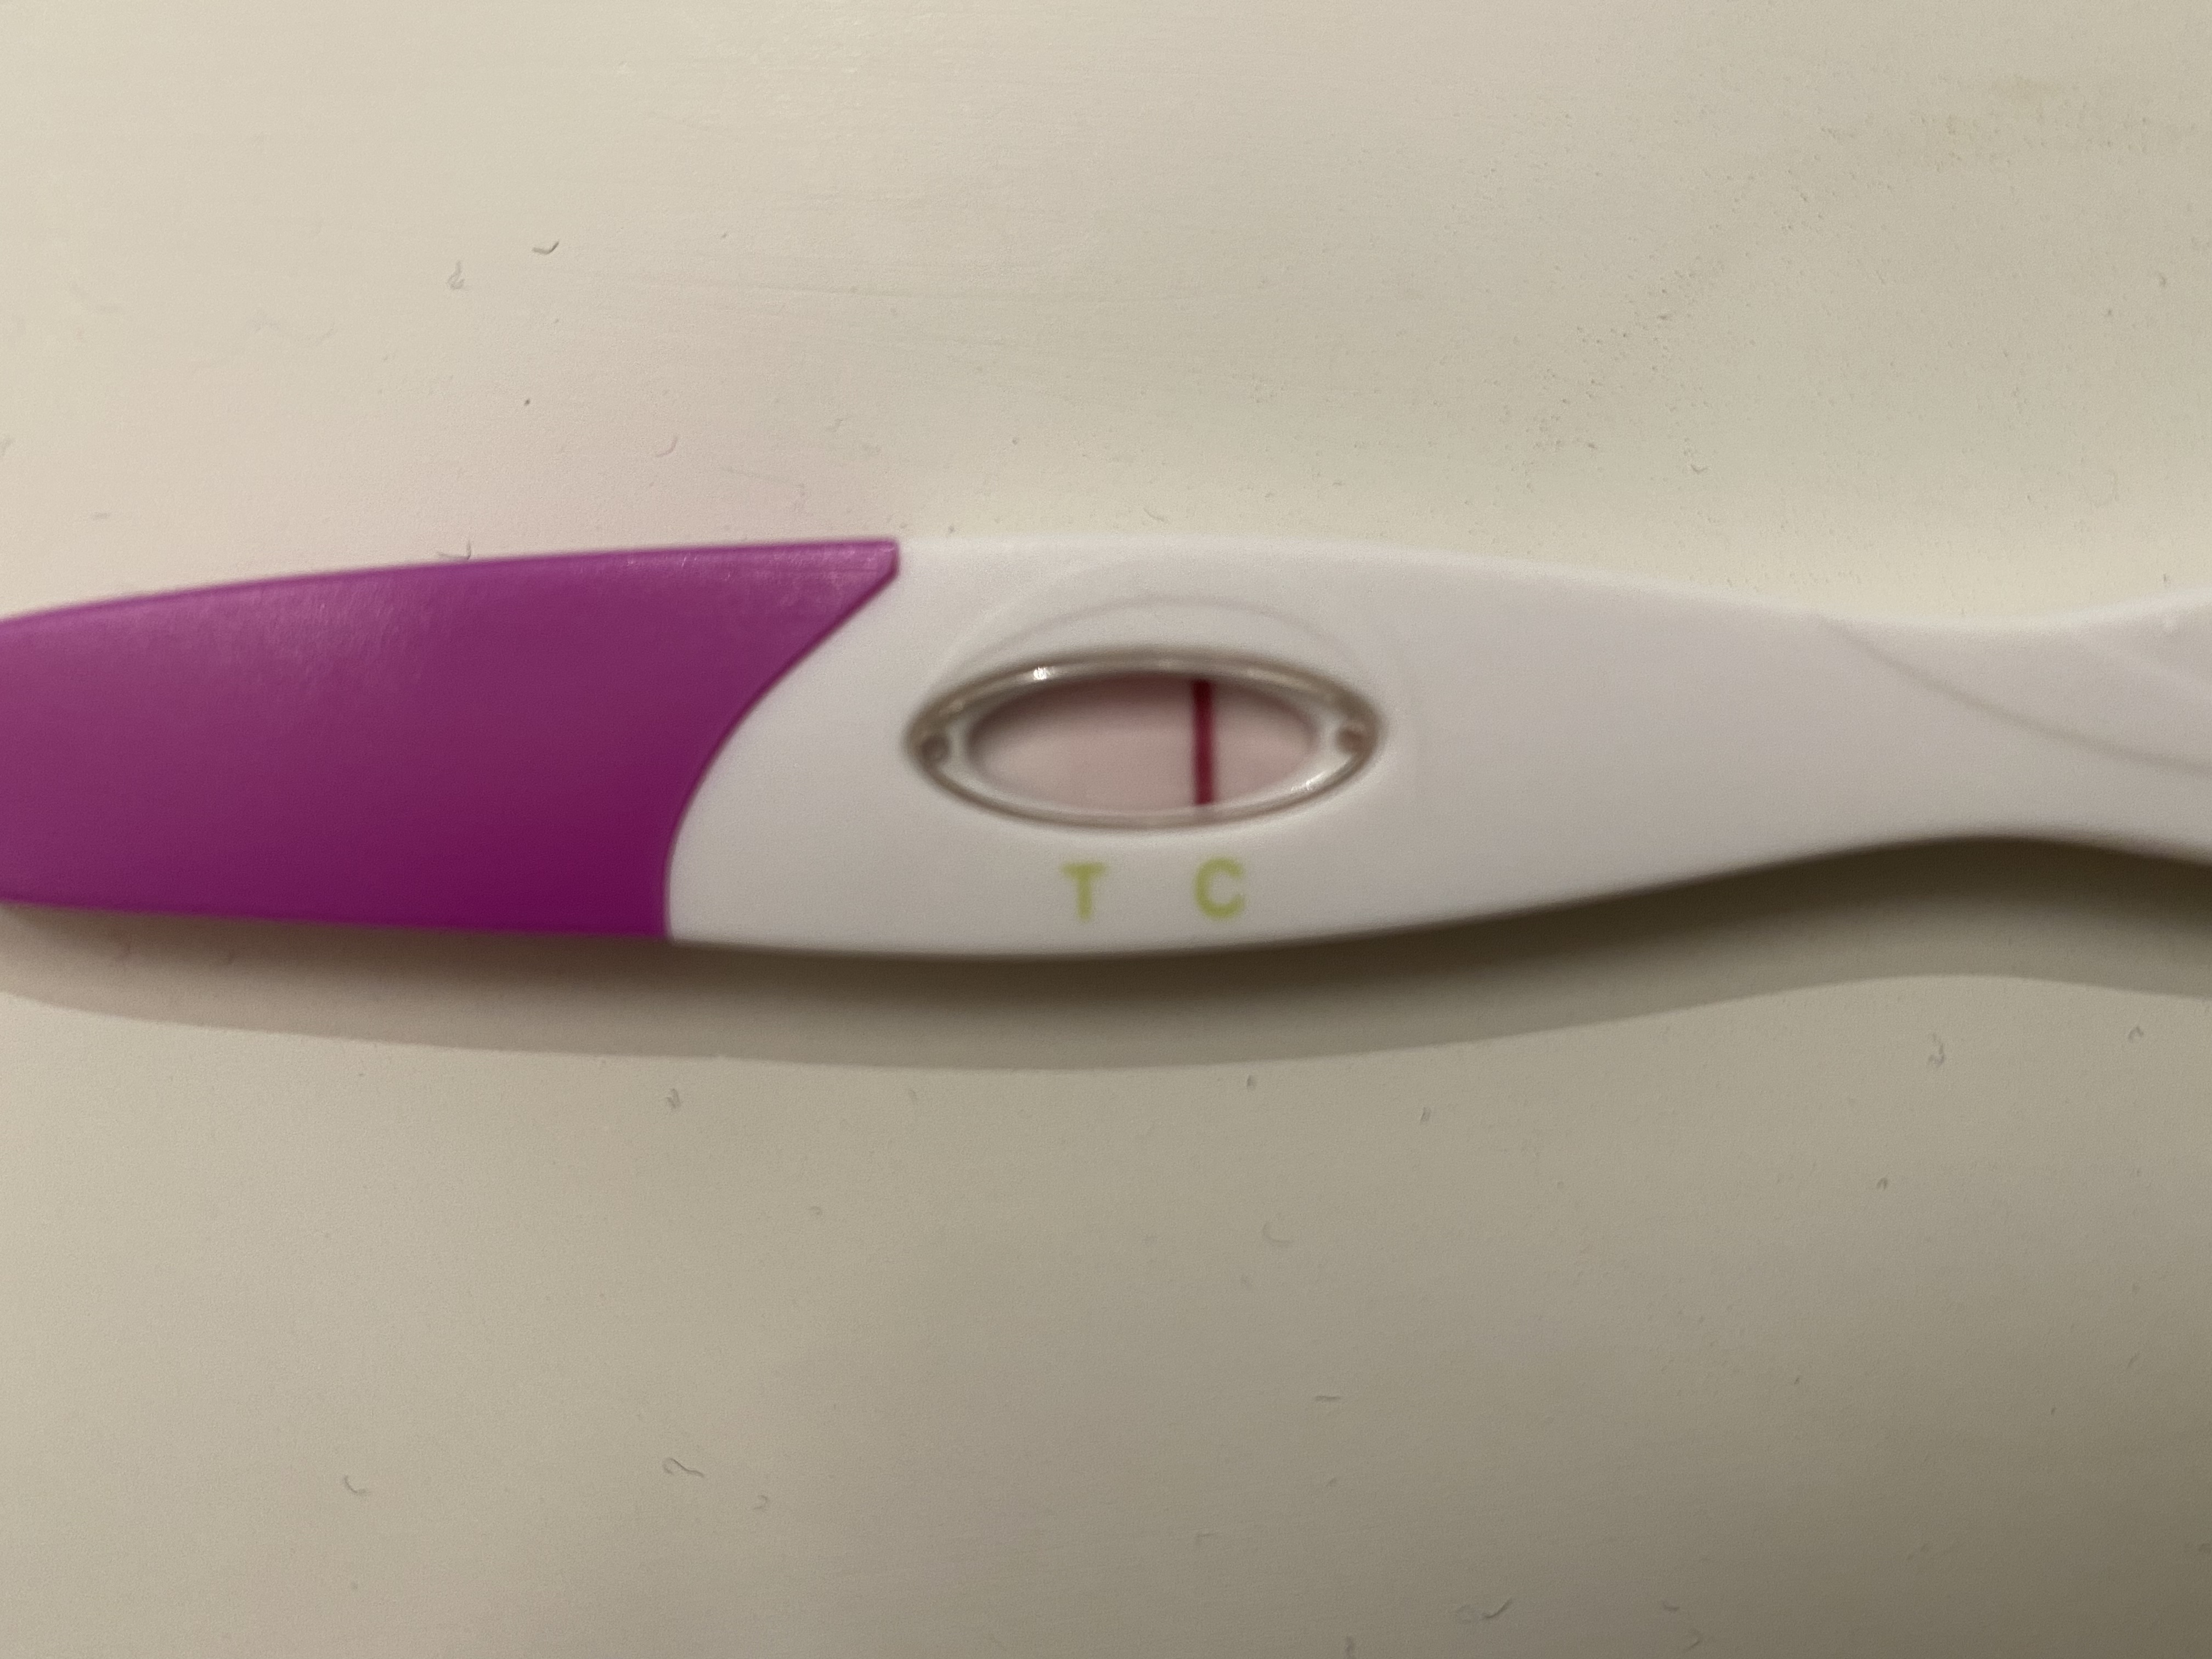 Valmed graviditetstest | Babyverden